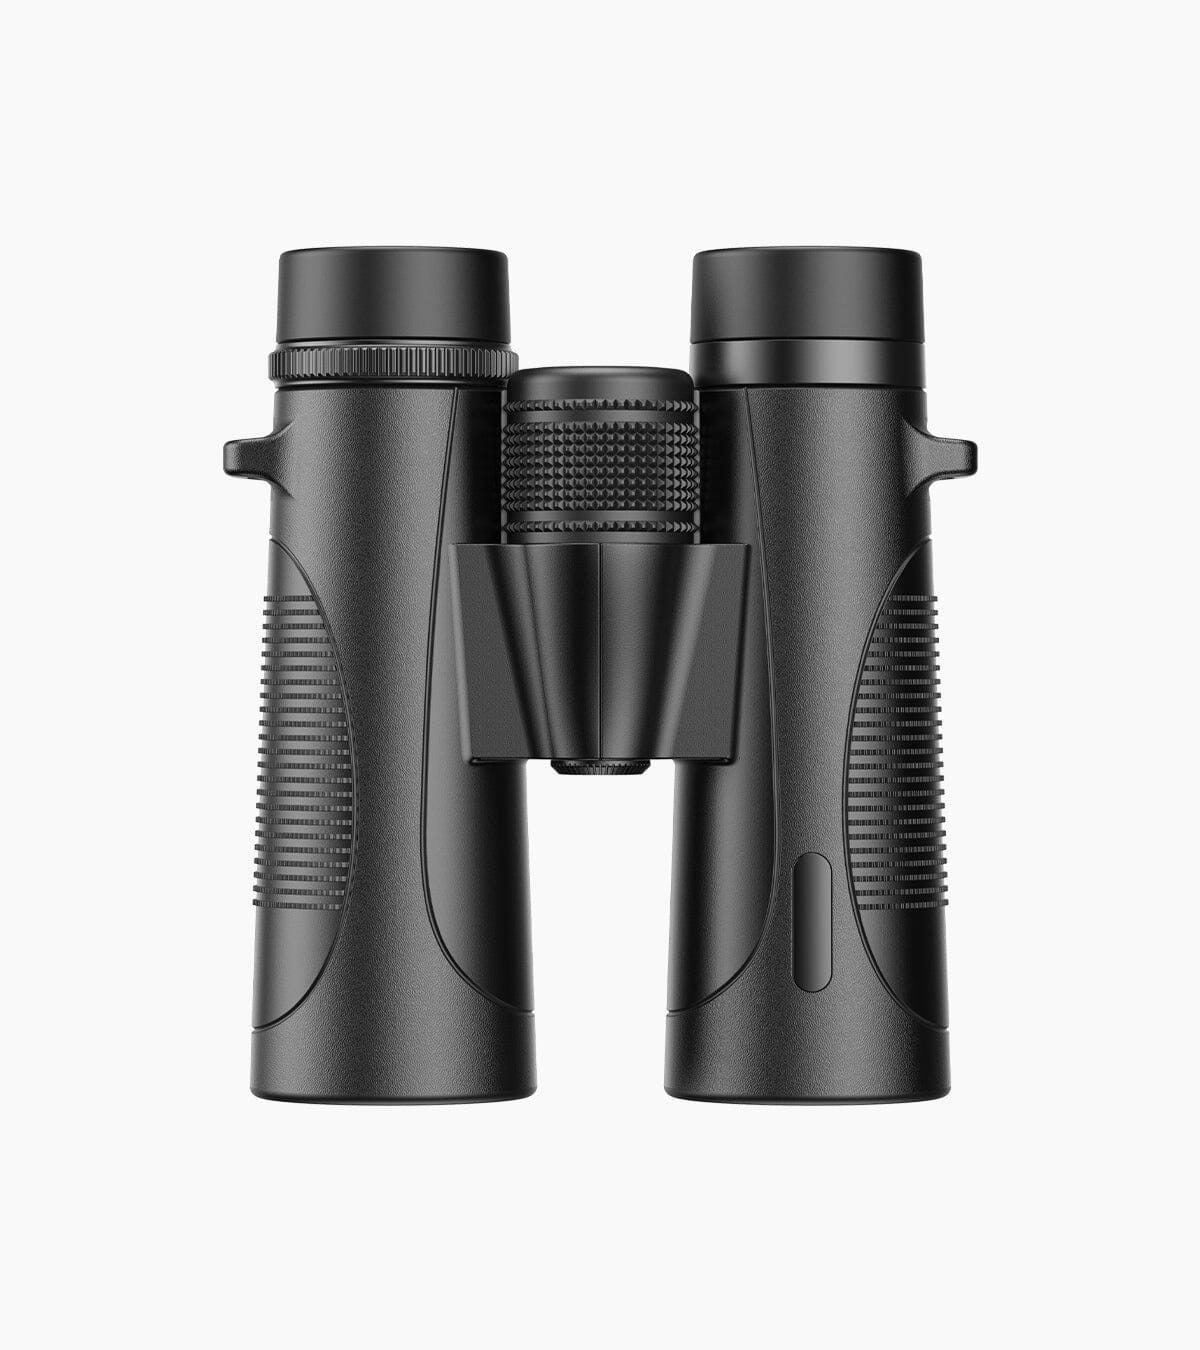 10X42W Waterproof Binoculars for Outdoor Bird Watching Concert Hunting Binoculars APEXEL 